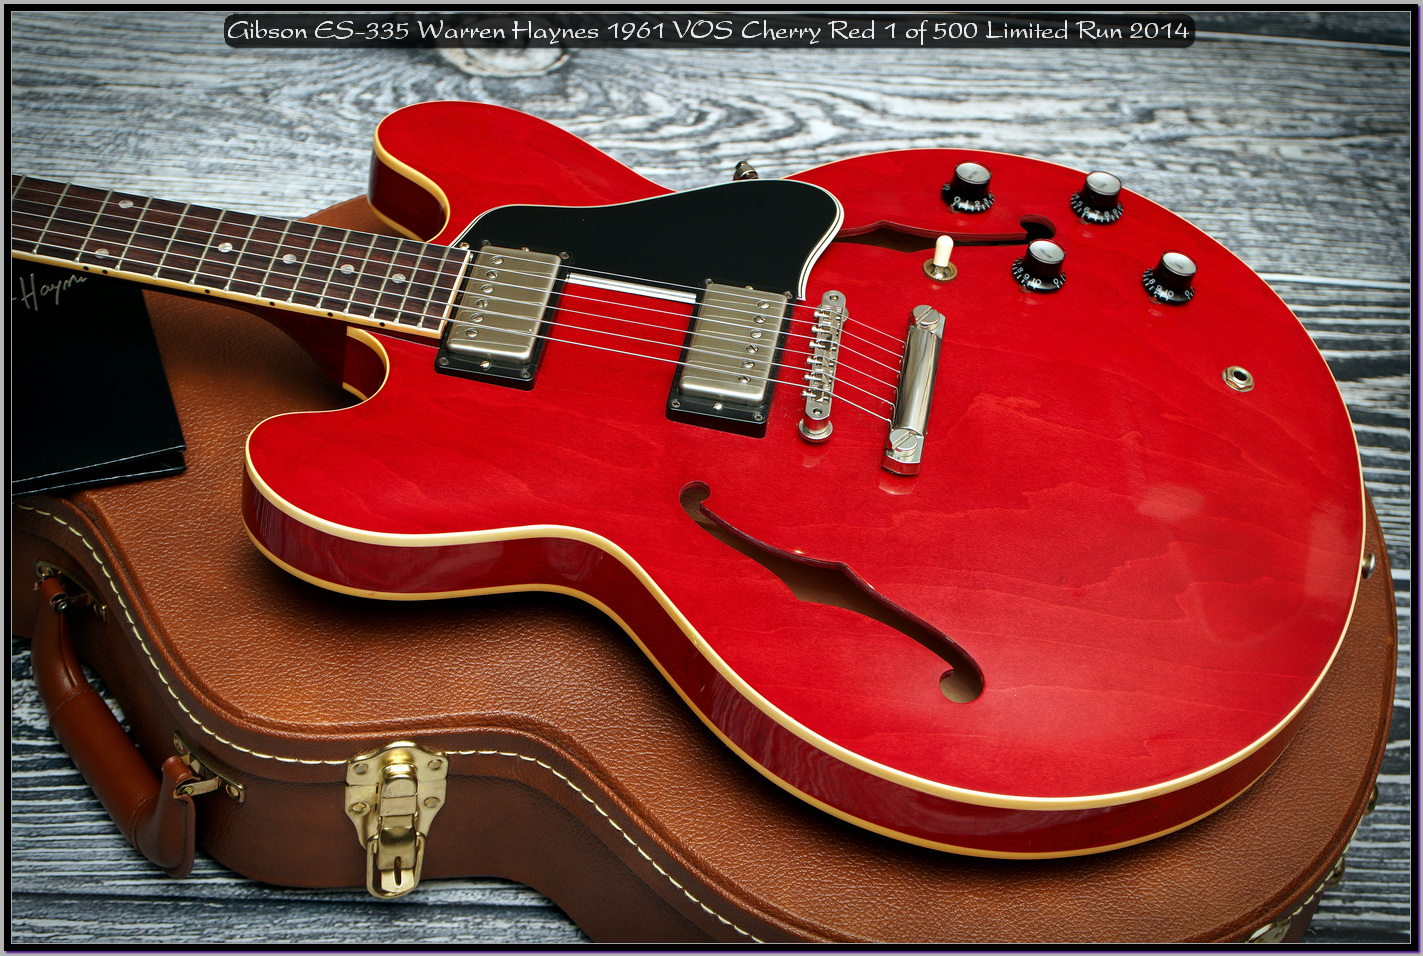 Gibson ES-335 Warren Haynes 1961 VOS Cherry Red 1 of 500 Limited Run 2014 02_x1440.jpg